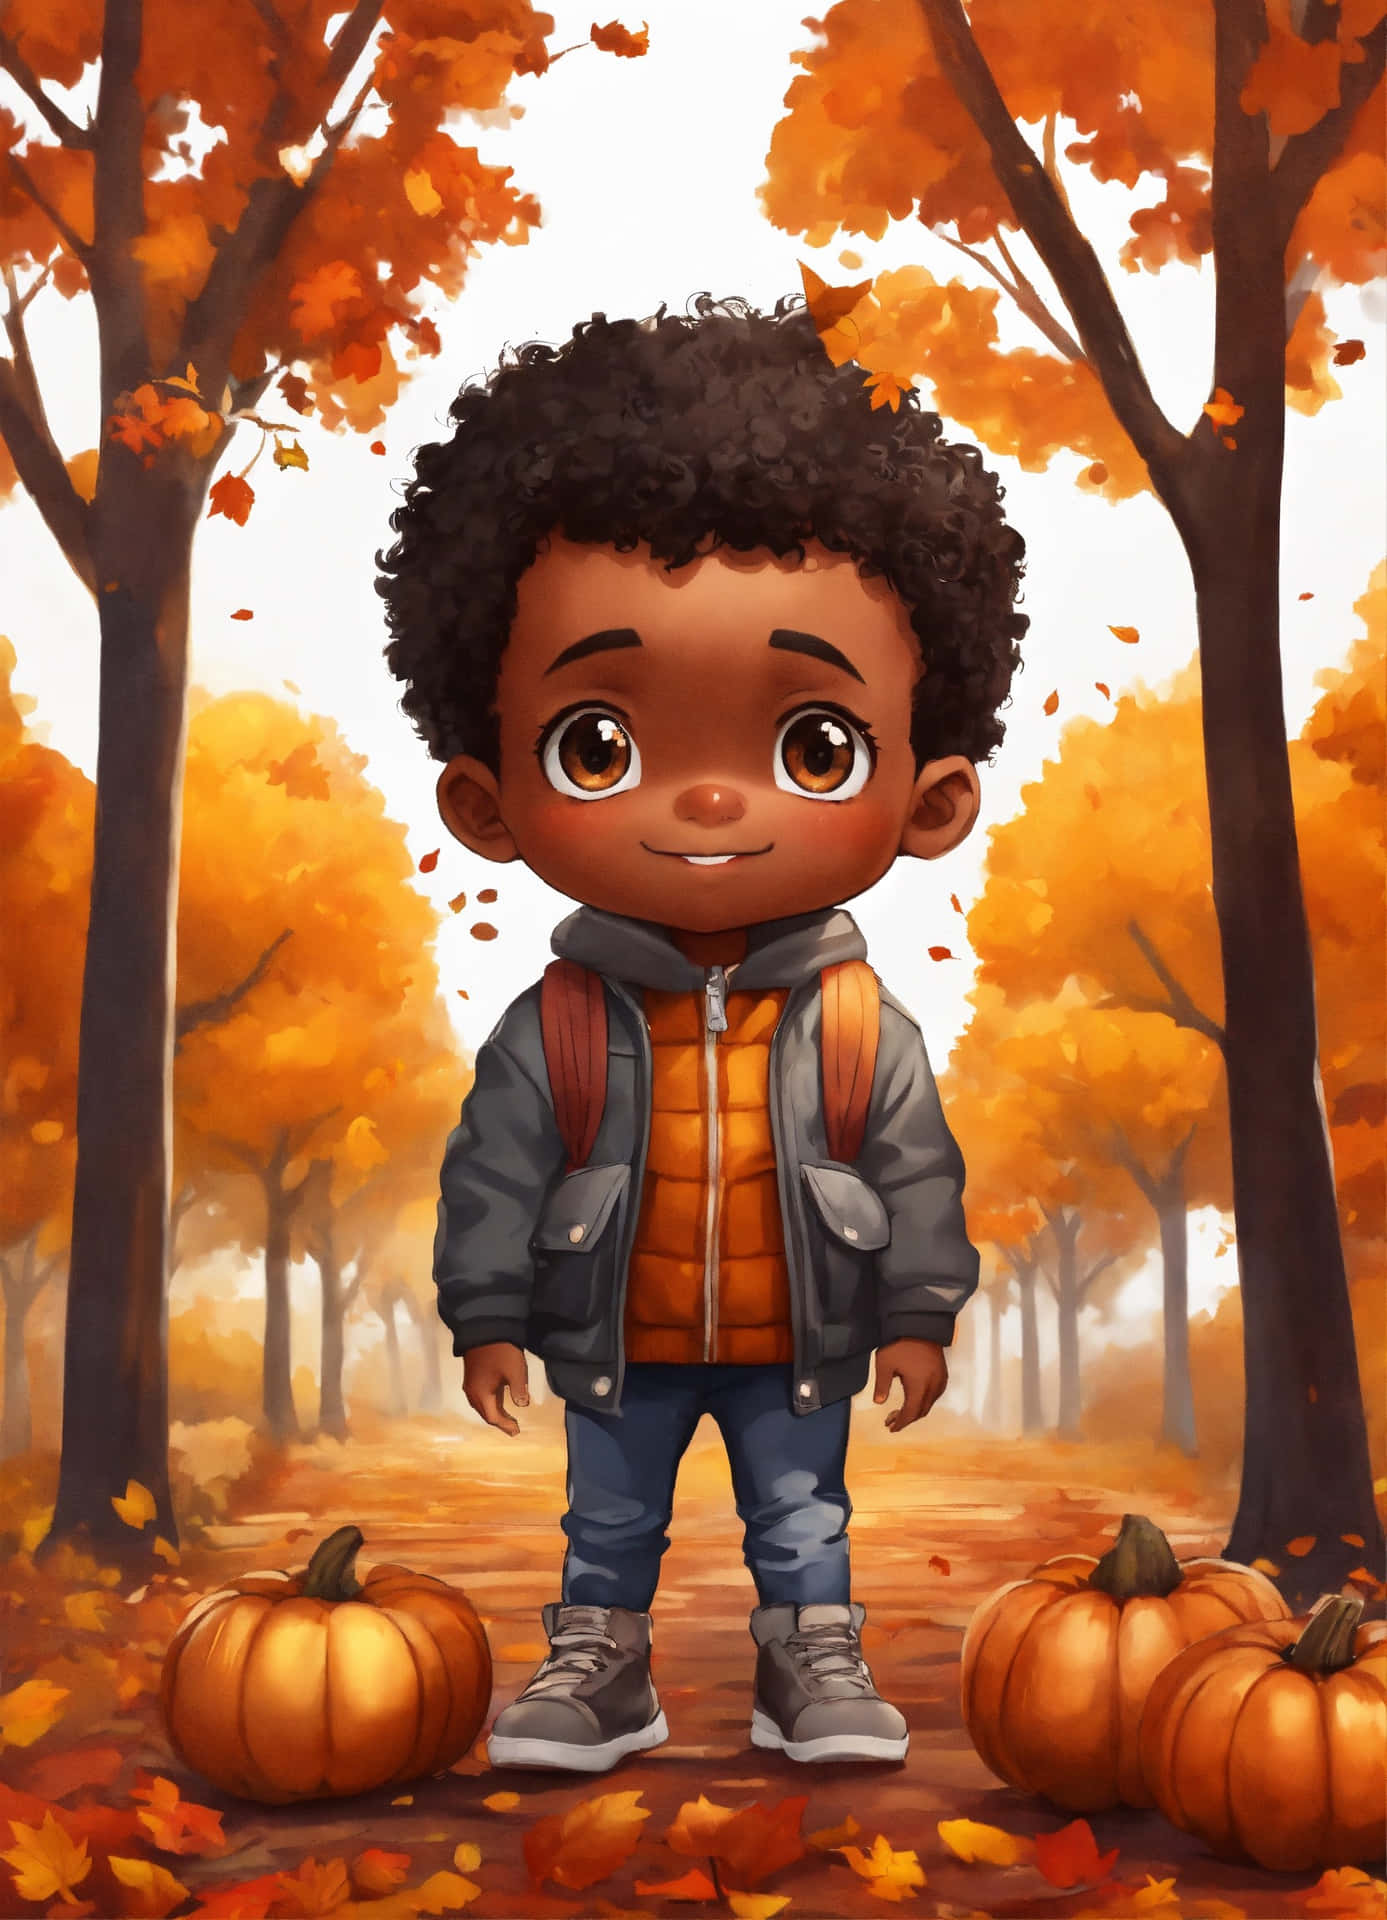 Autumn Boy Illustration Wallpaper